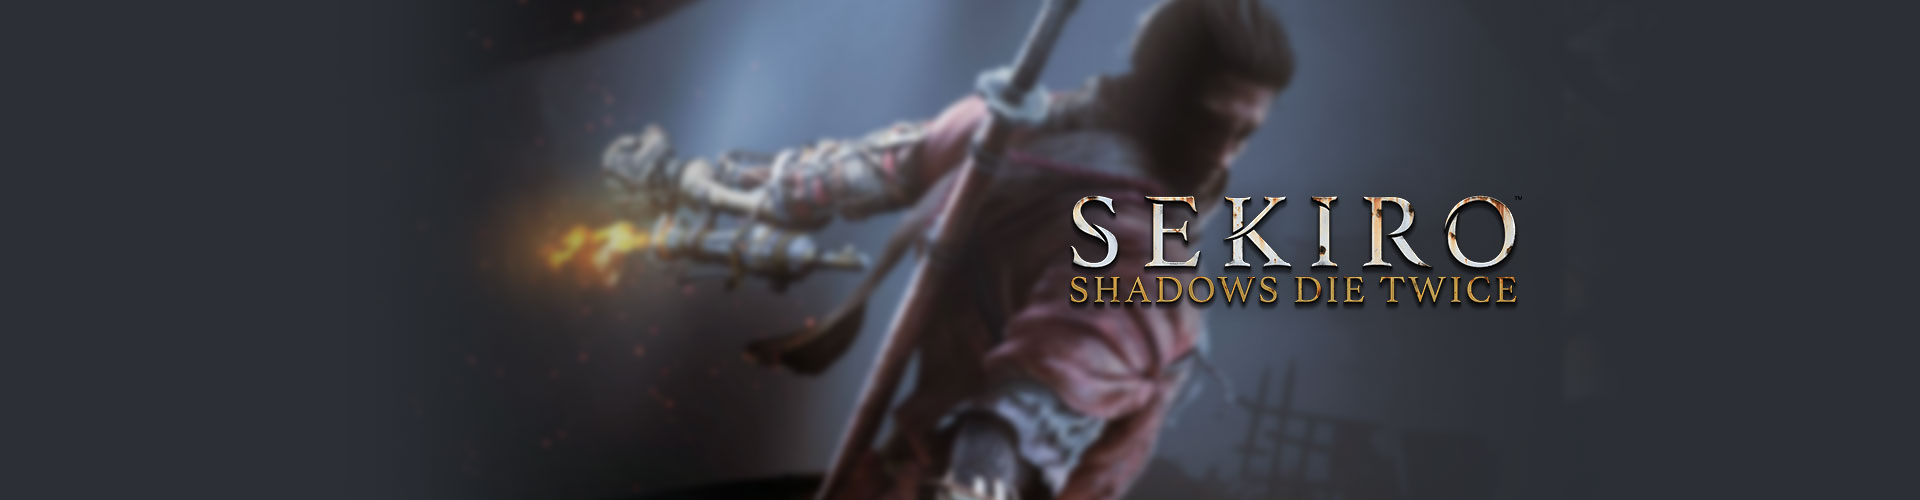 Configuration PC minimale, recommandée et 4K pour jouer à Sekiro : Shadows Die Twice